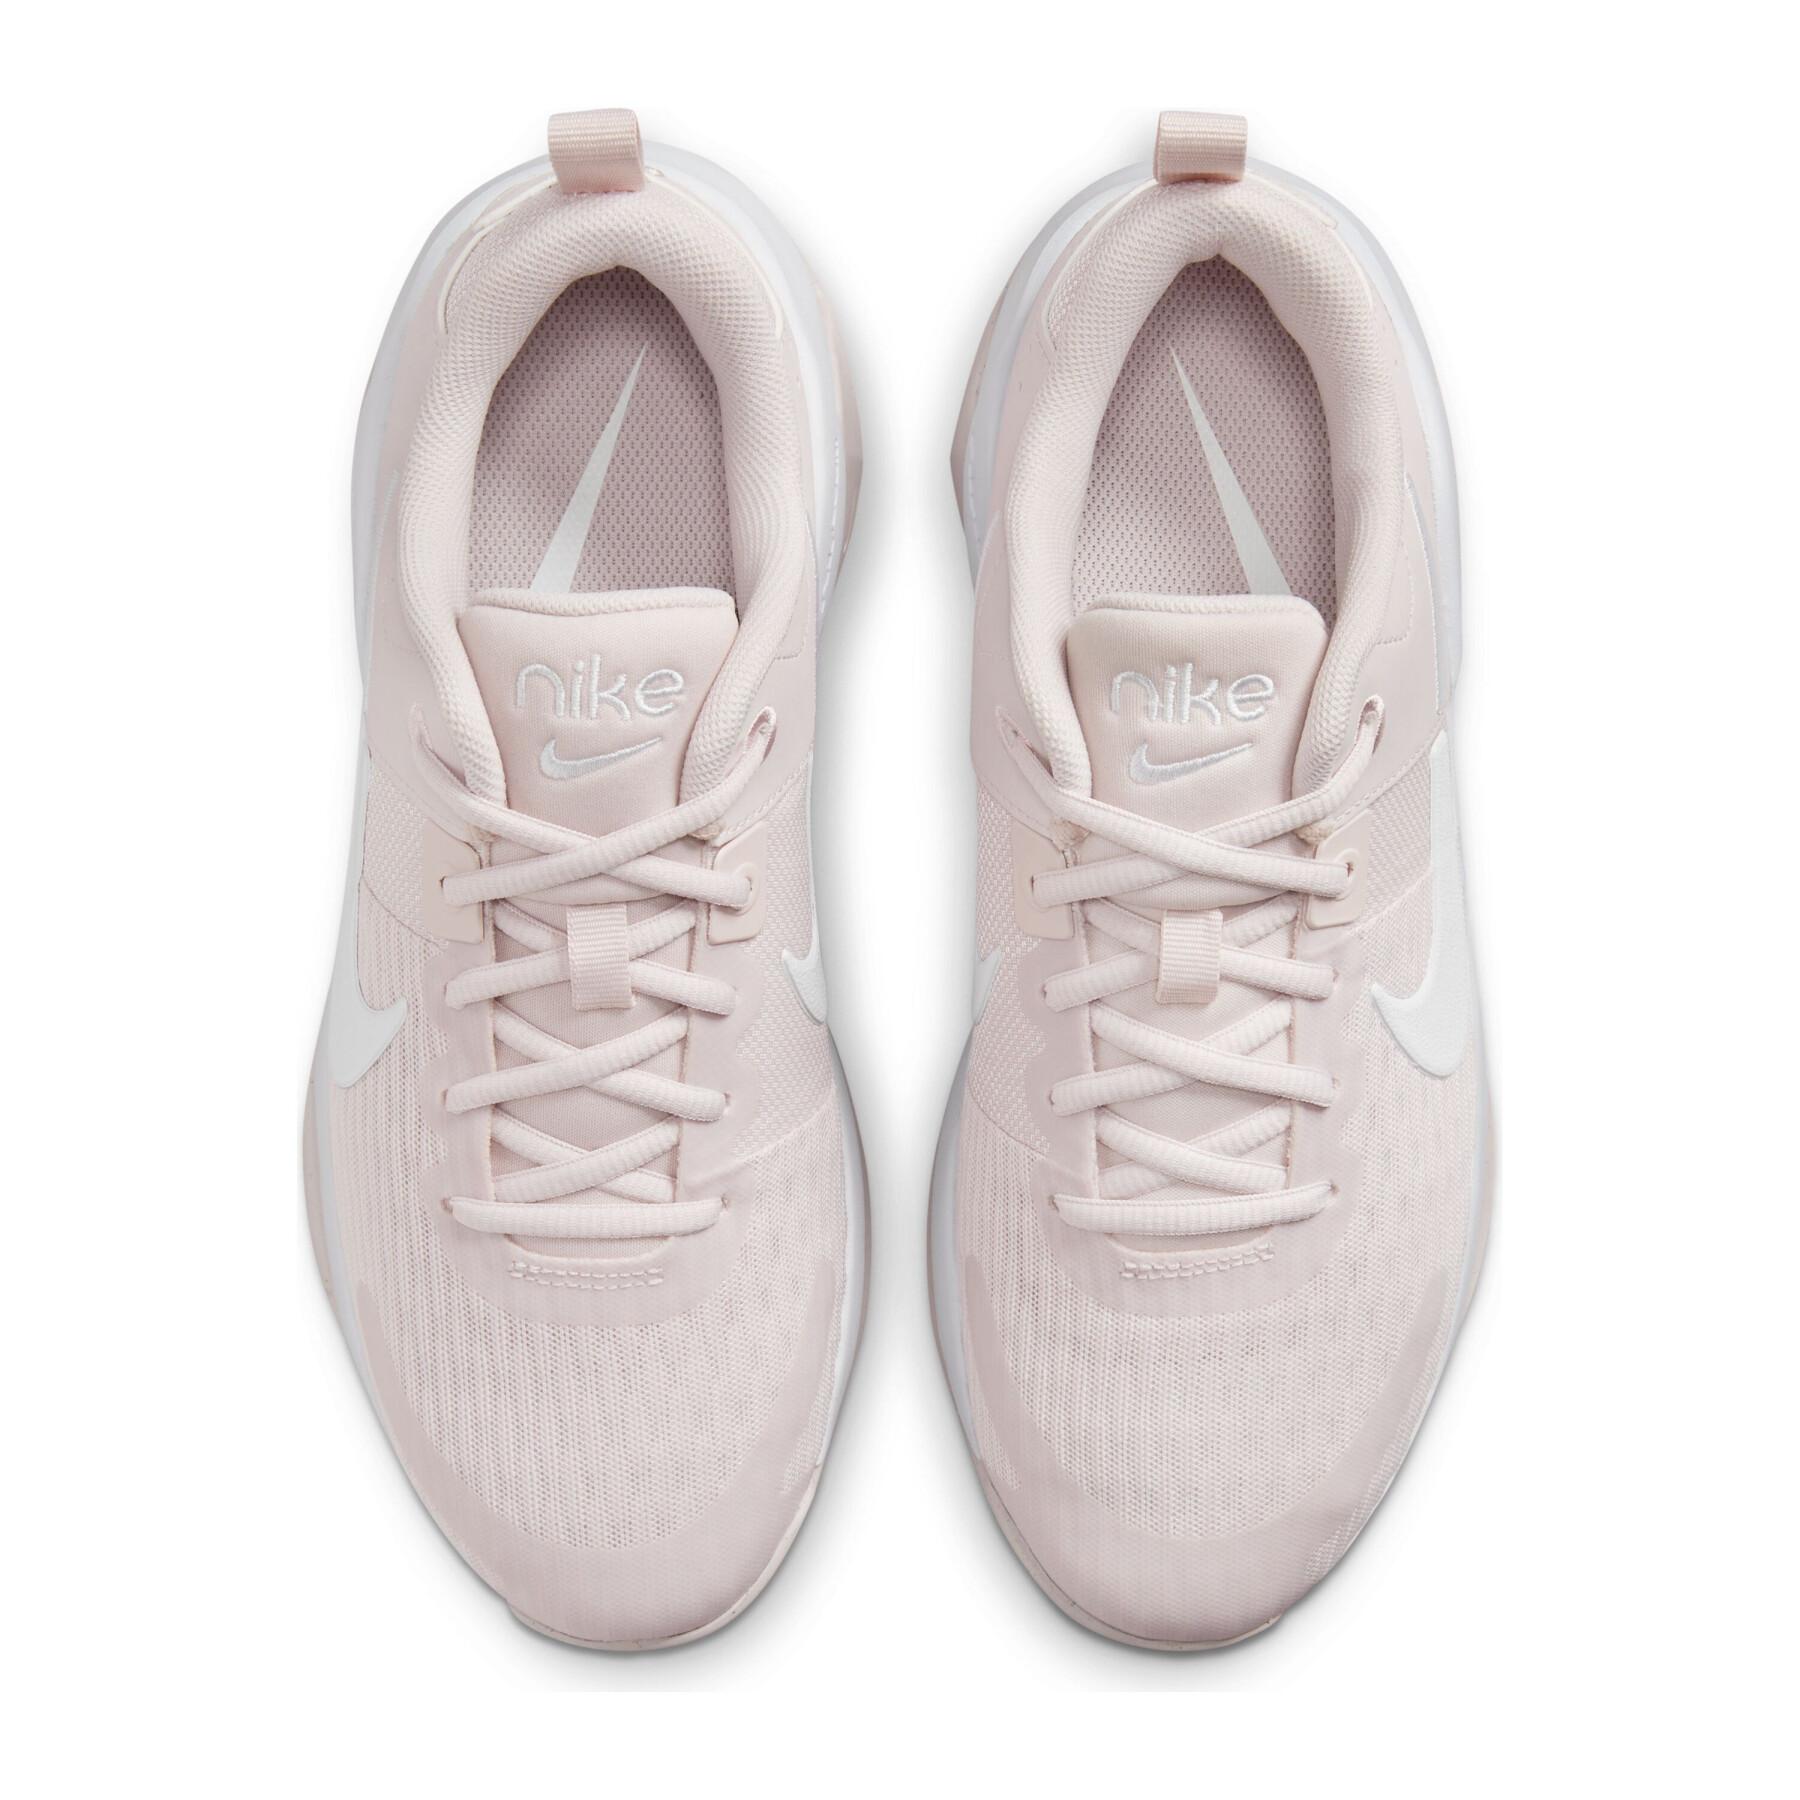 Sapatos de treino cruzado para mulheres Nike Zoom bella 6